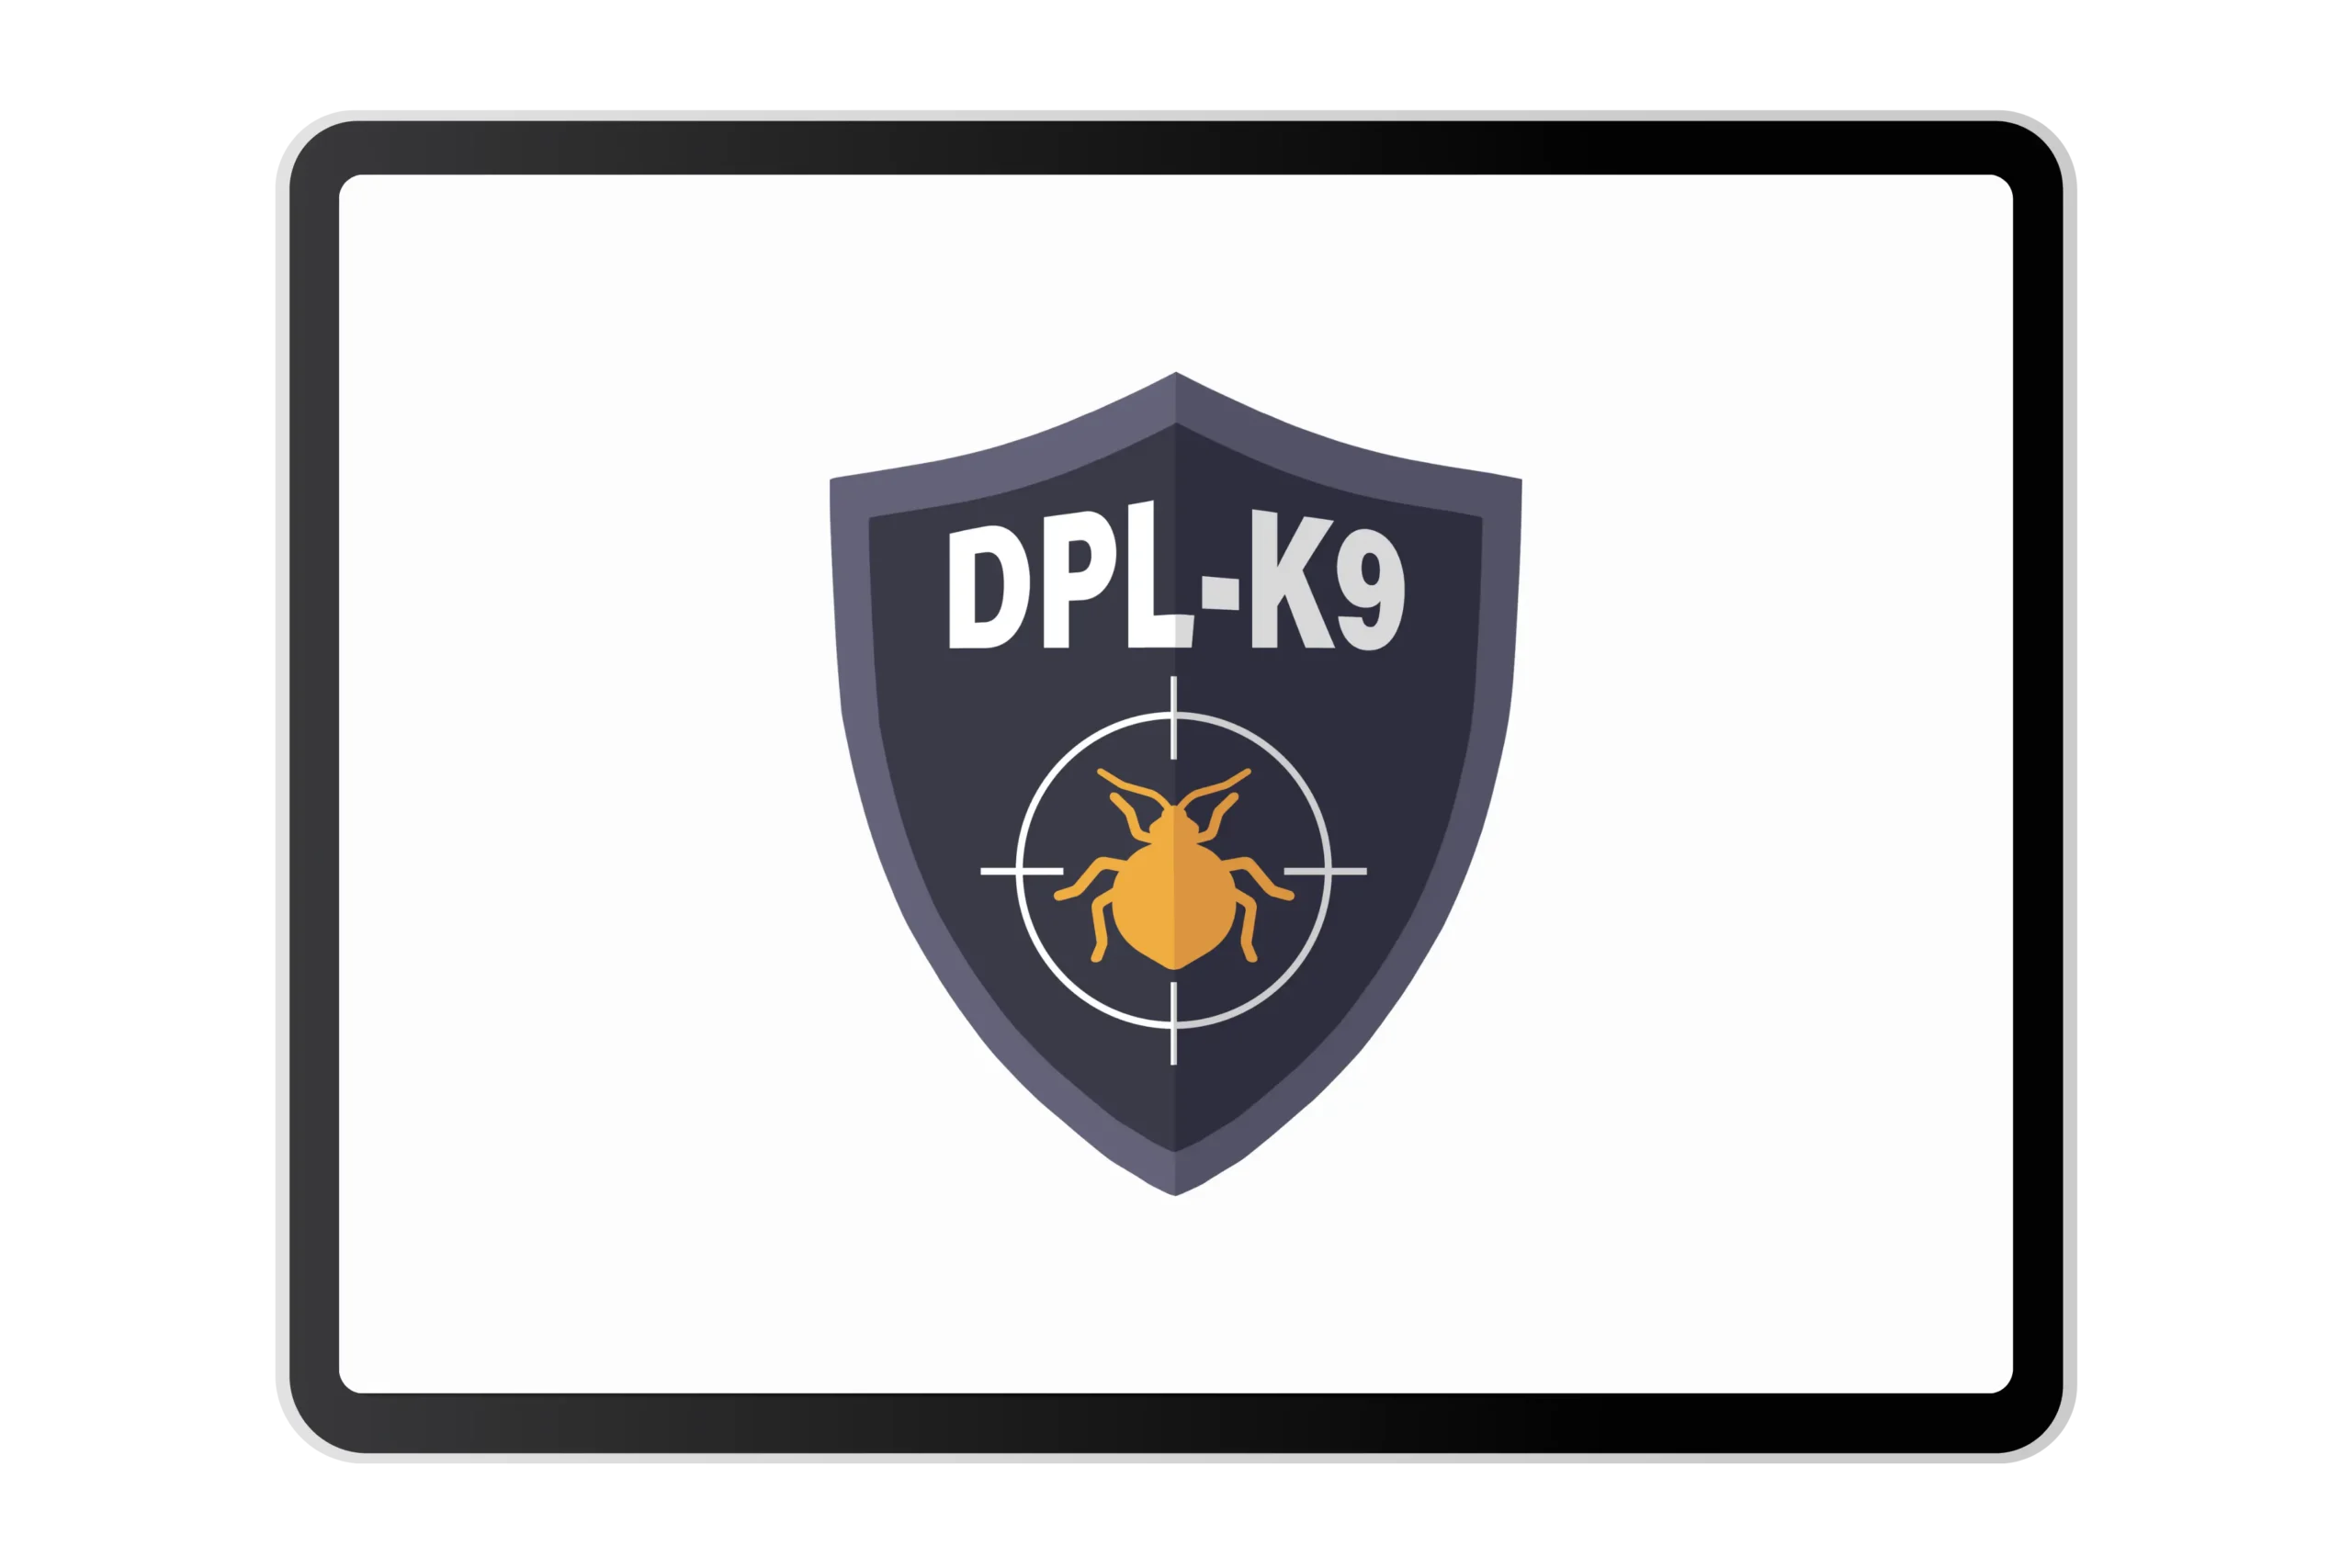 Lire la suite à propos de l’article DPL-K9